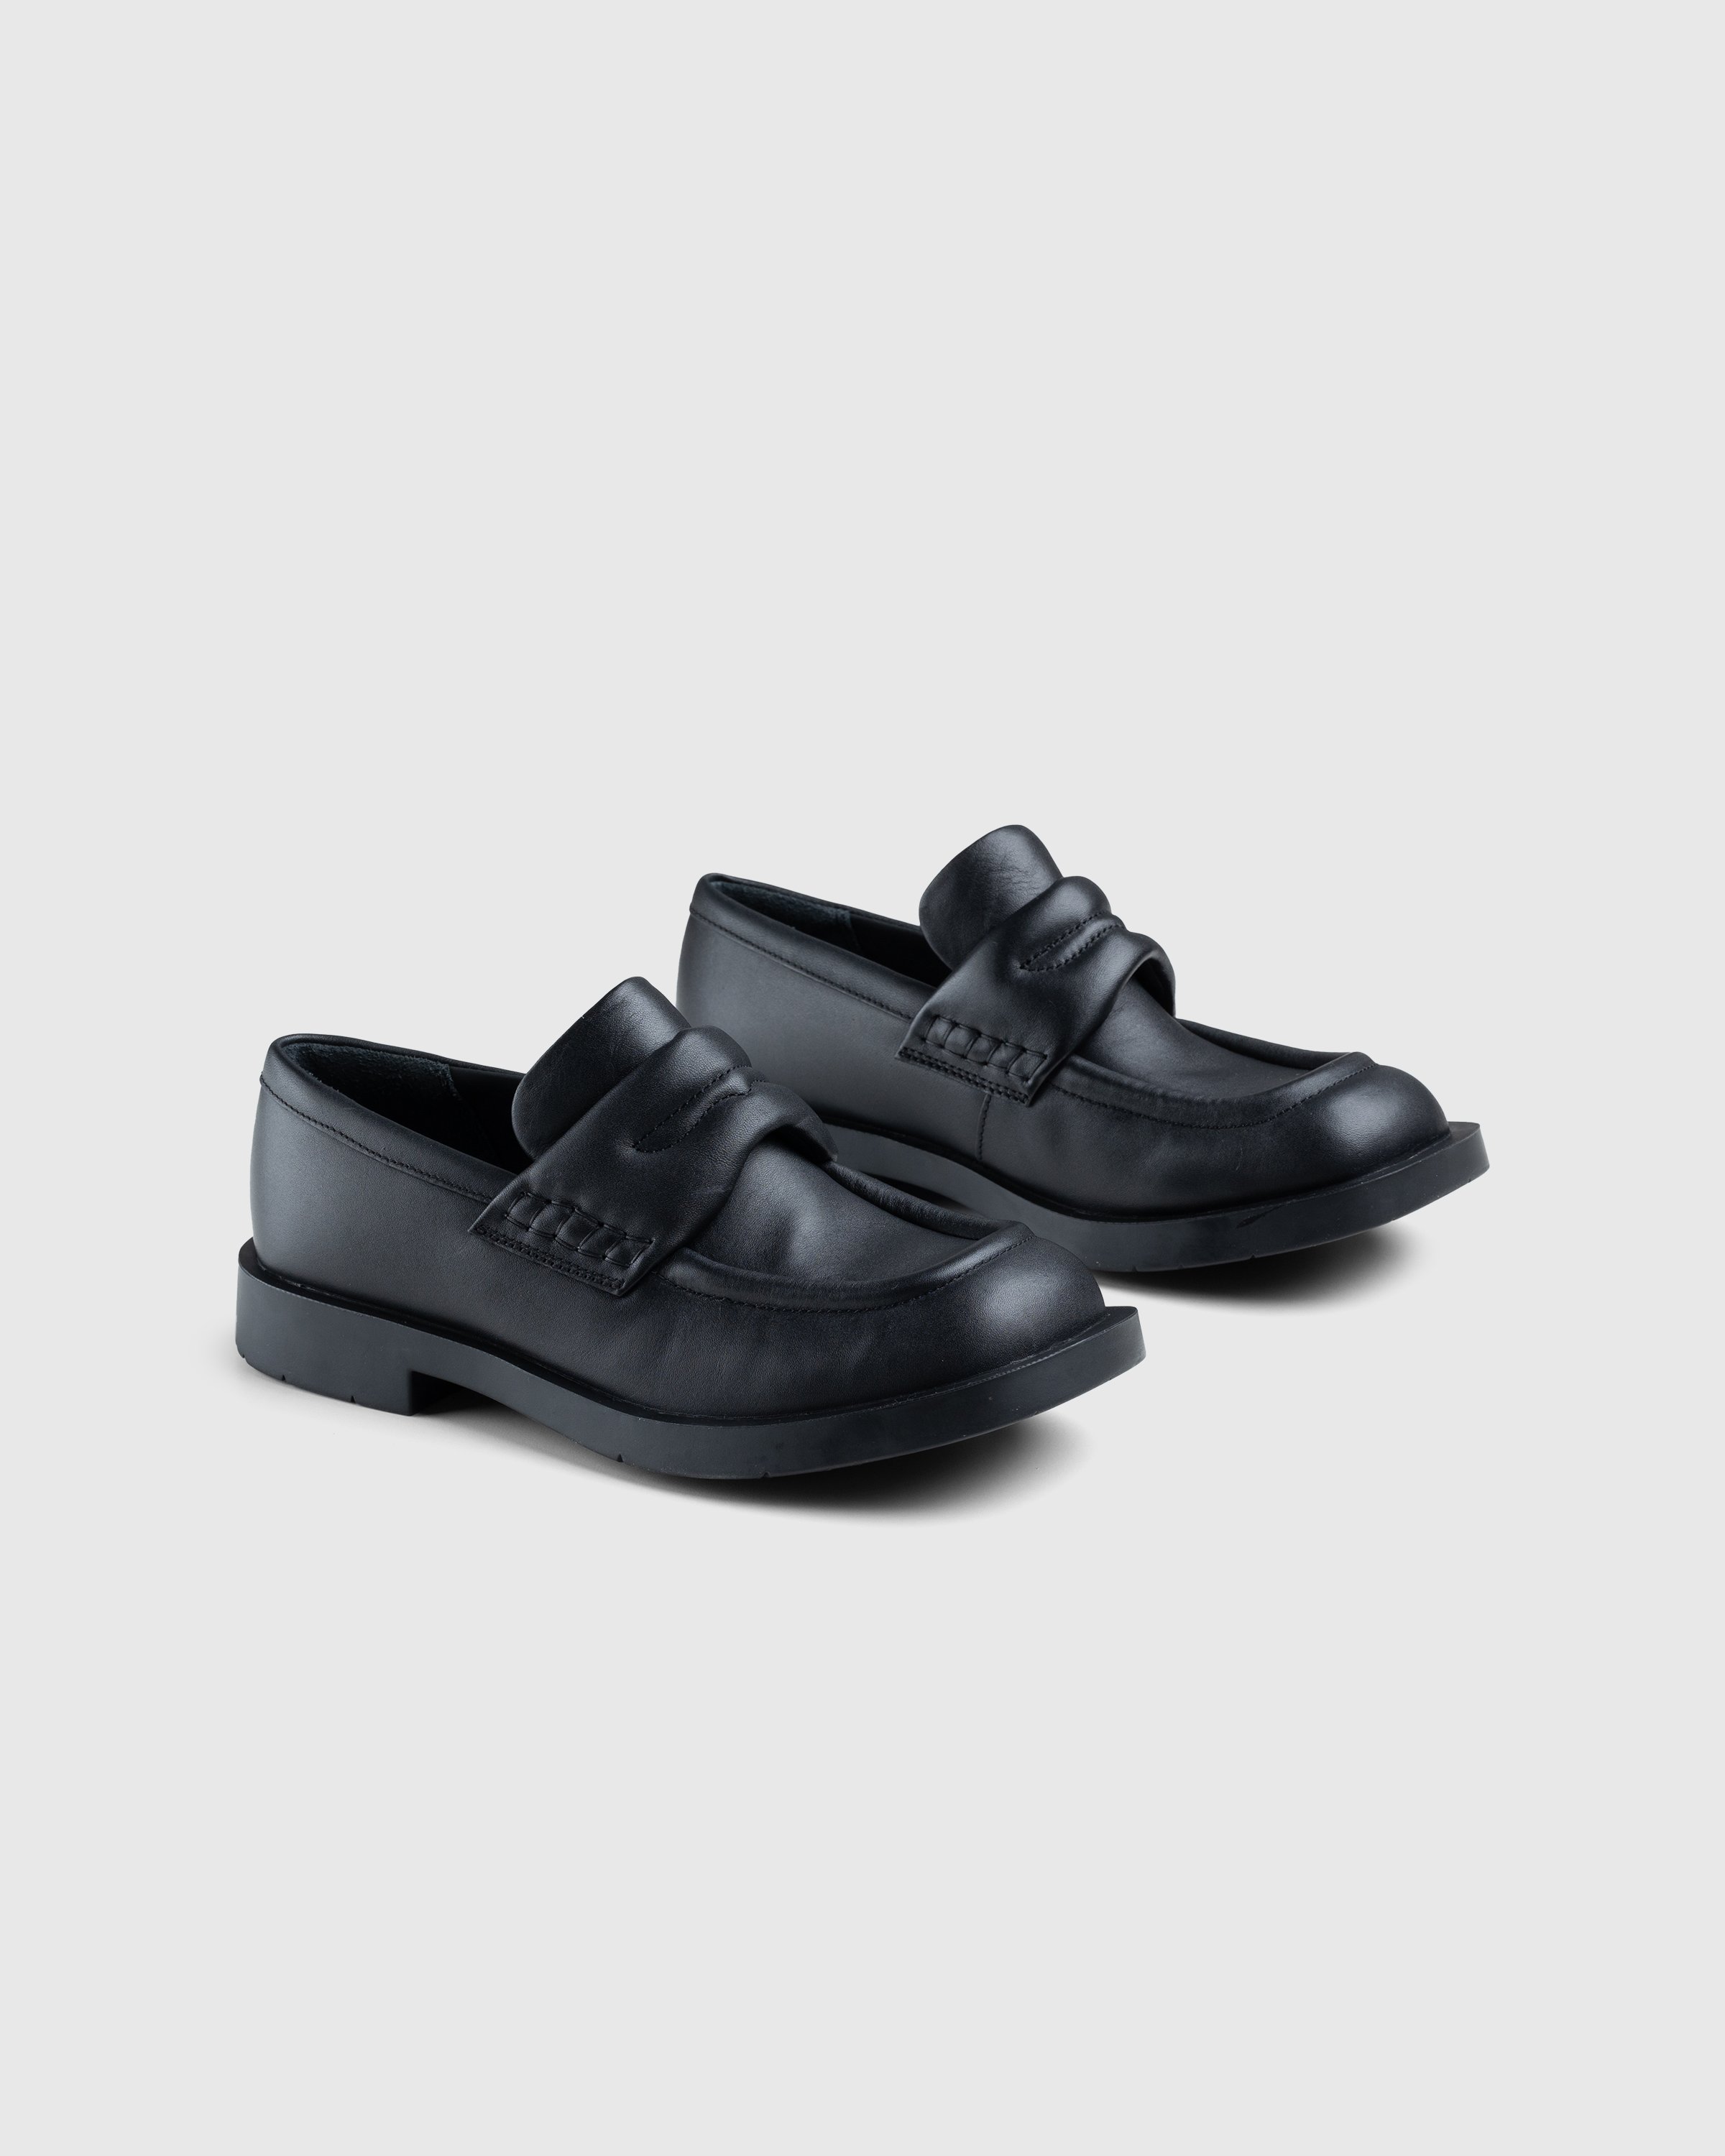 CAMPERLAB - MIL 1978 Loafer Black - Footwear - Black - Image 3